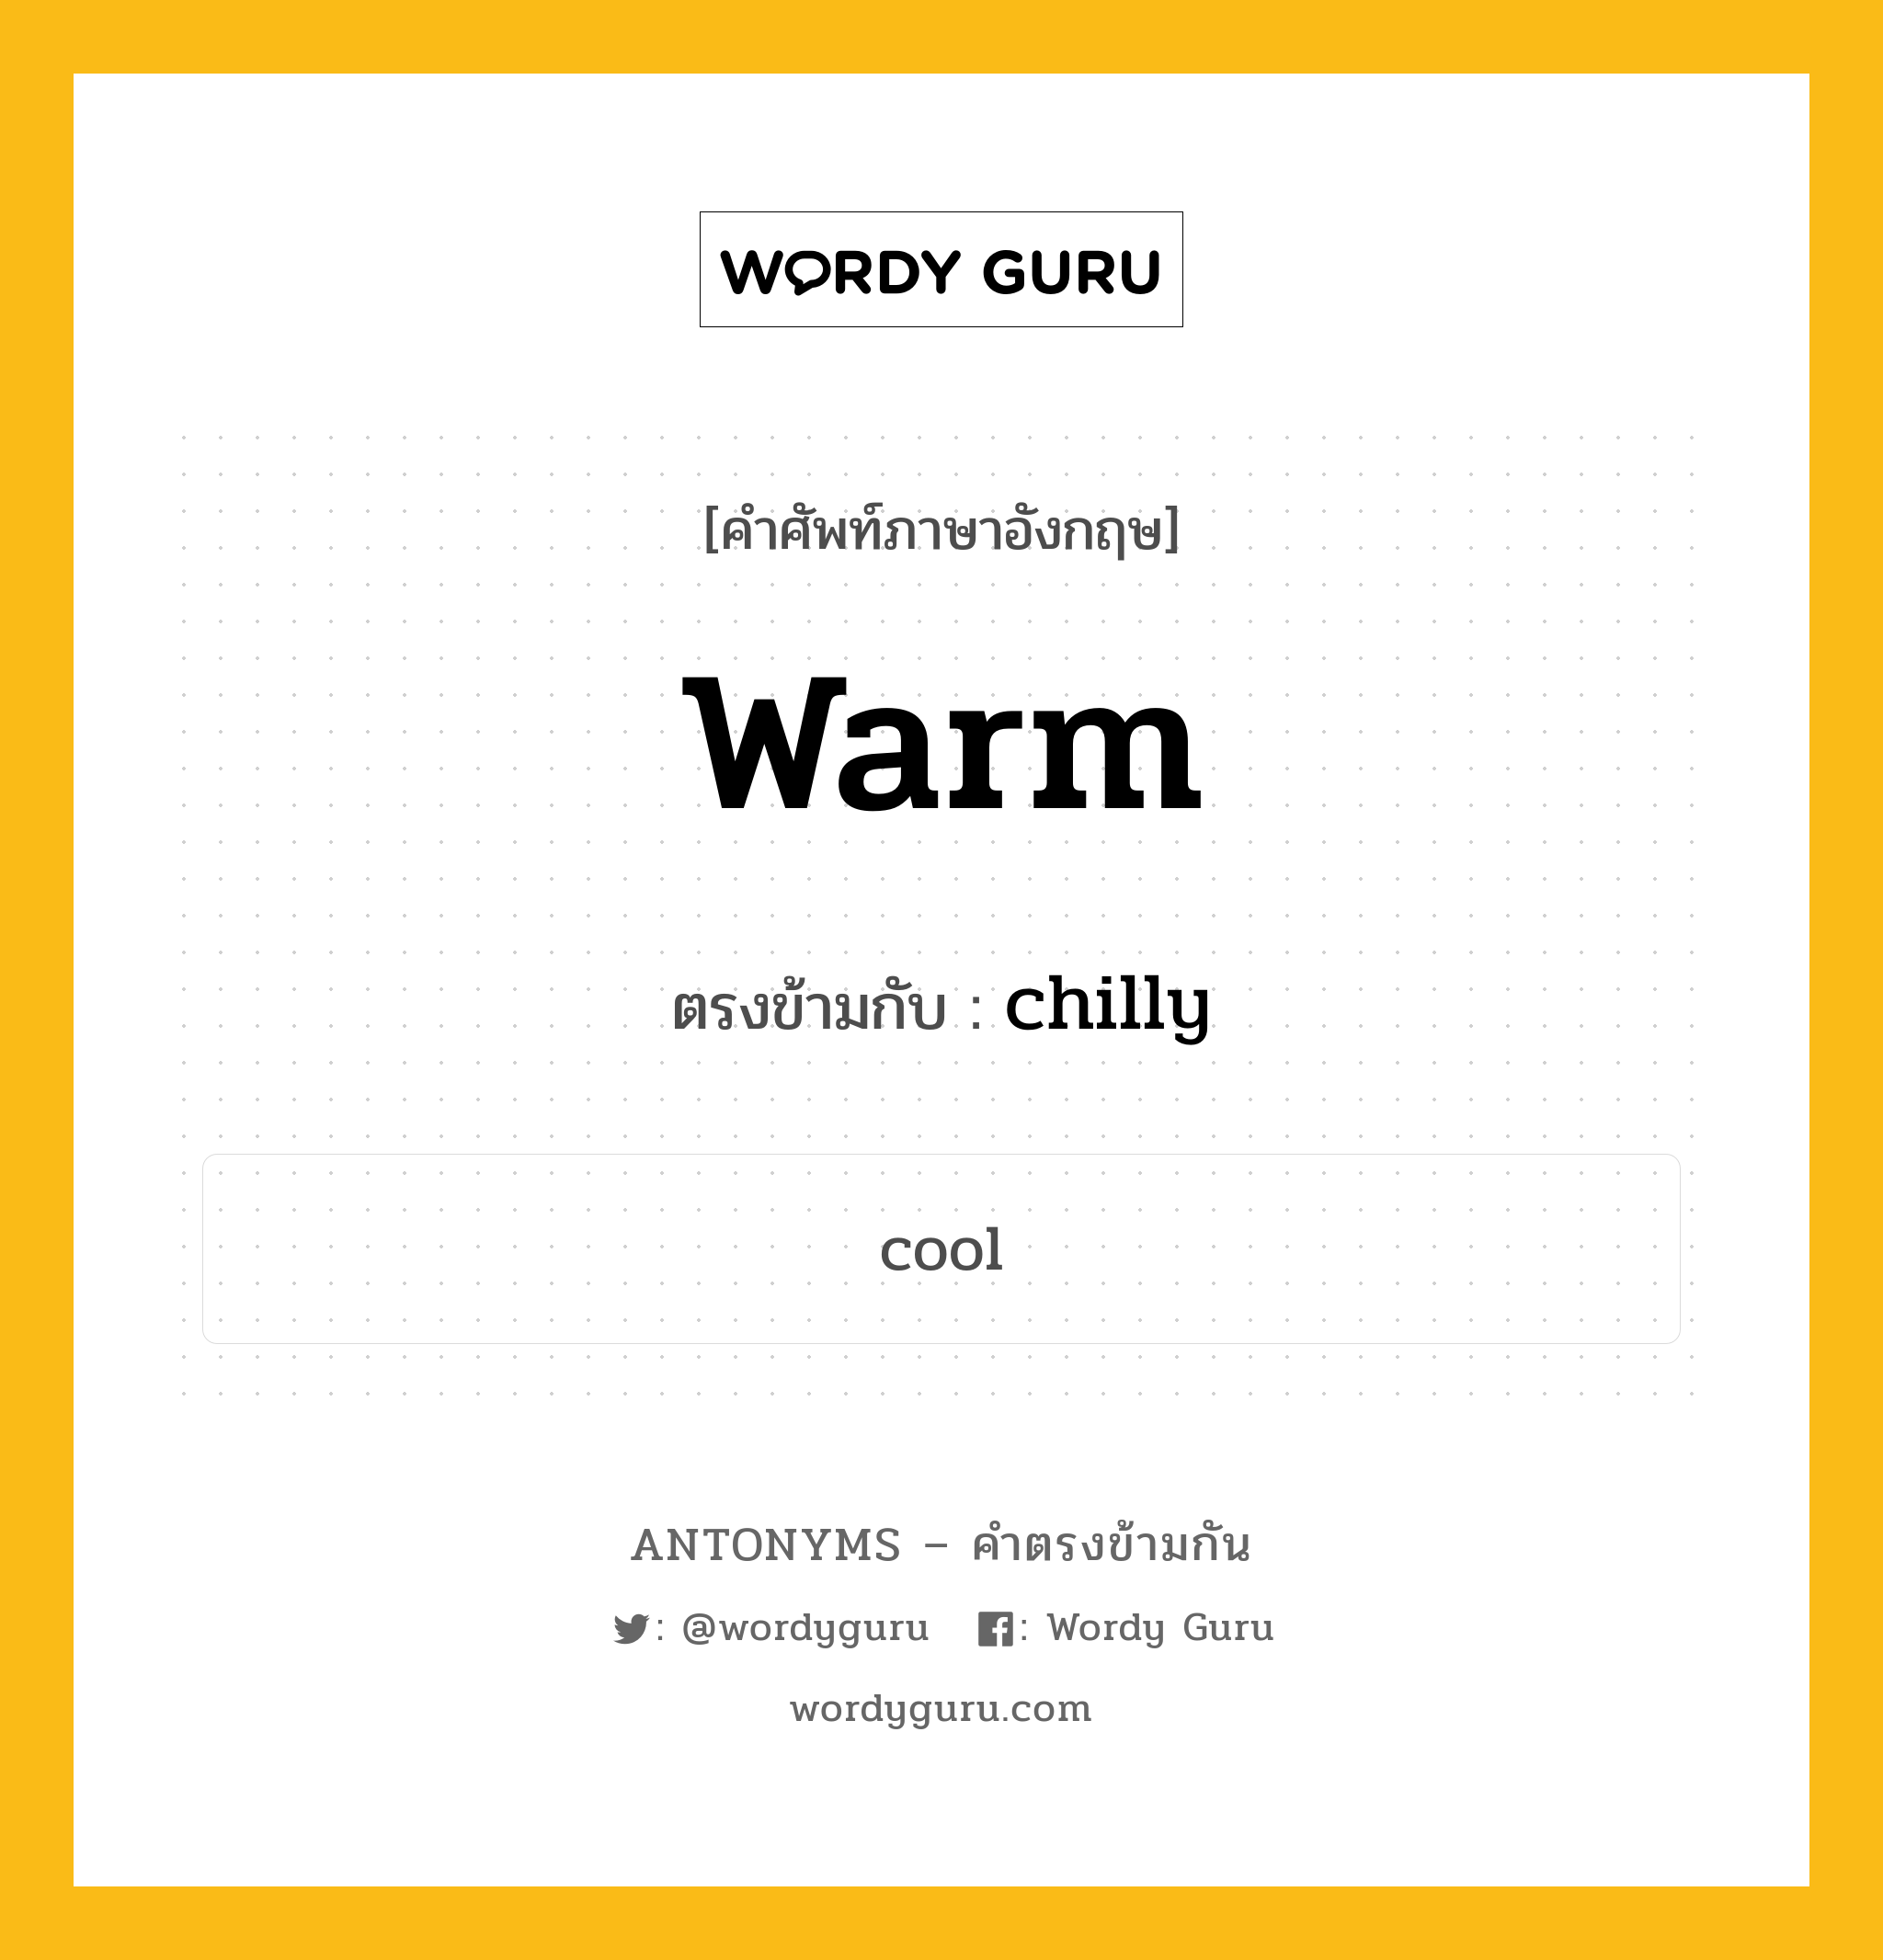 warm เป็นคำตรงข้ามกับคำไหนบ้าง?, คำศัพท์ภาษาอังกฤษ warm ตรงข้ามกับ chilly หมวด chilly